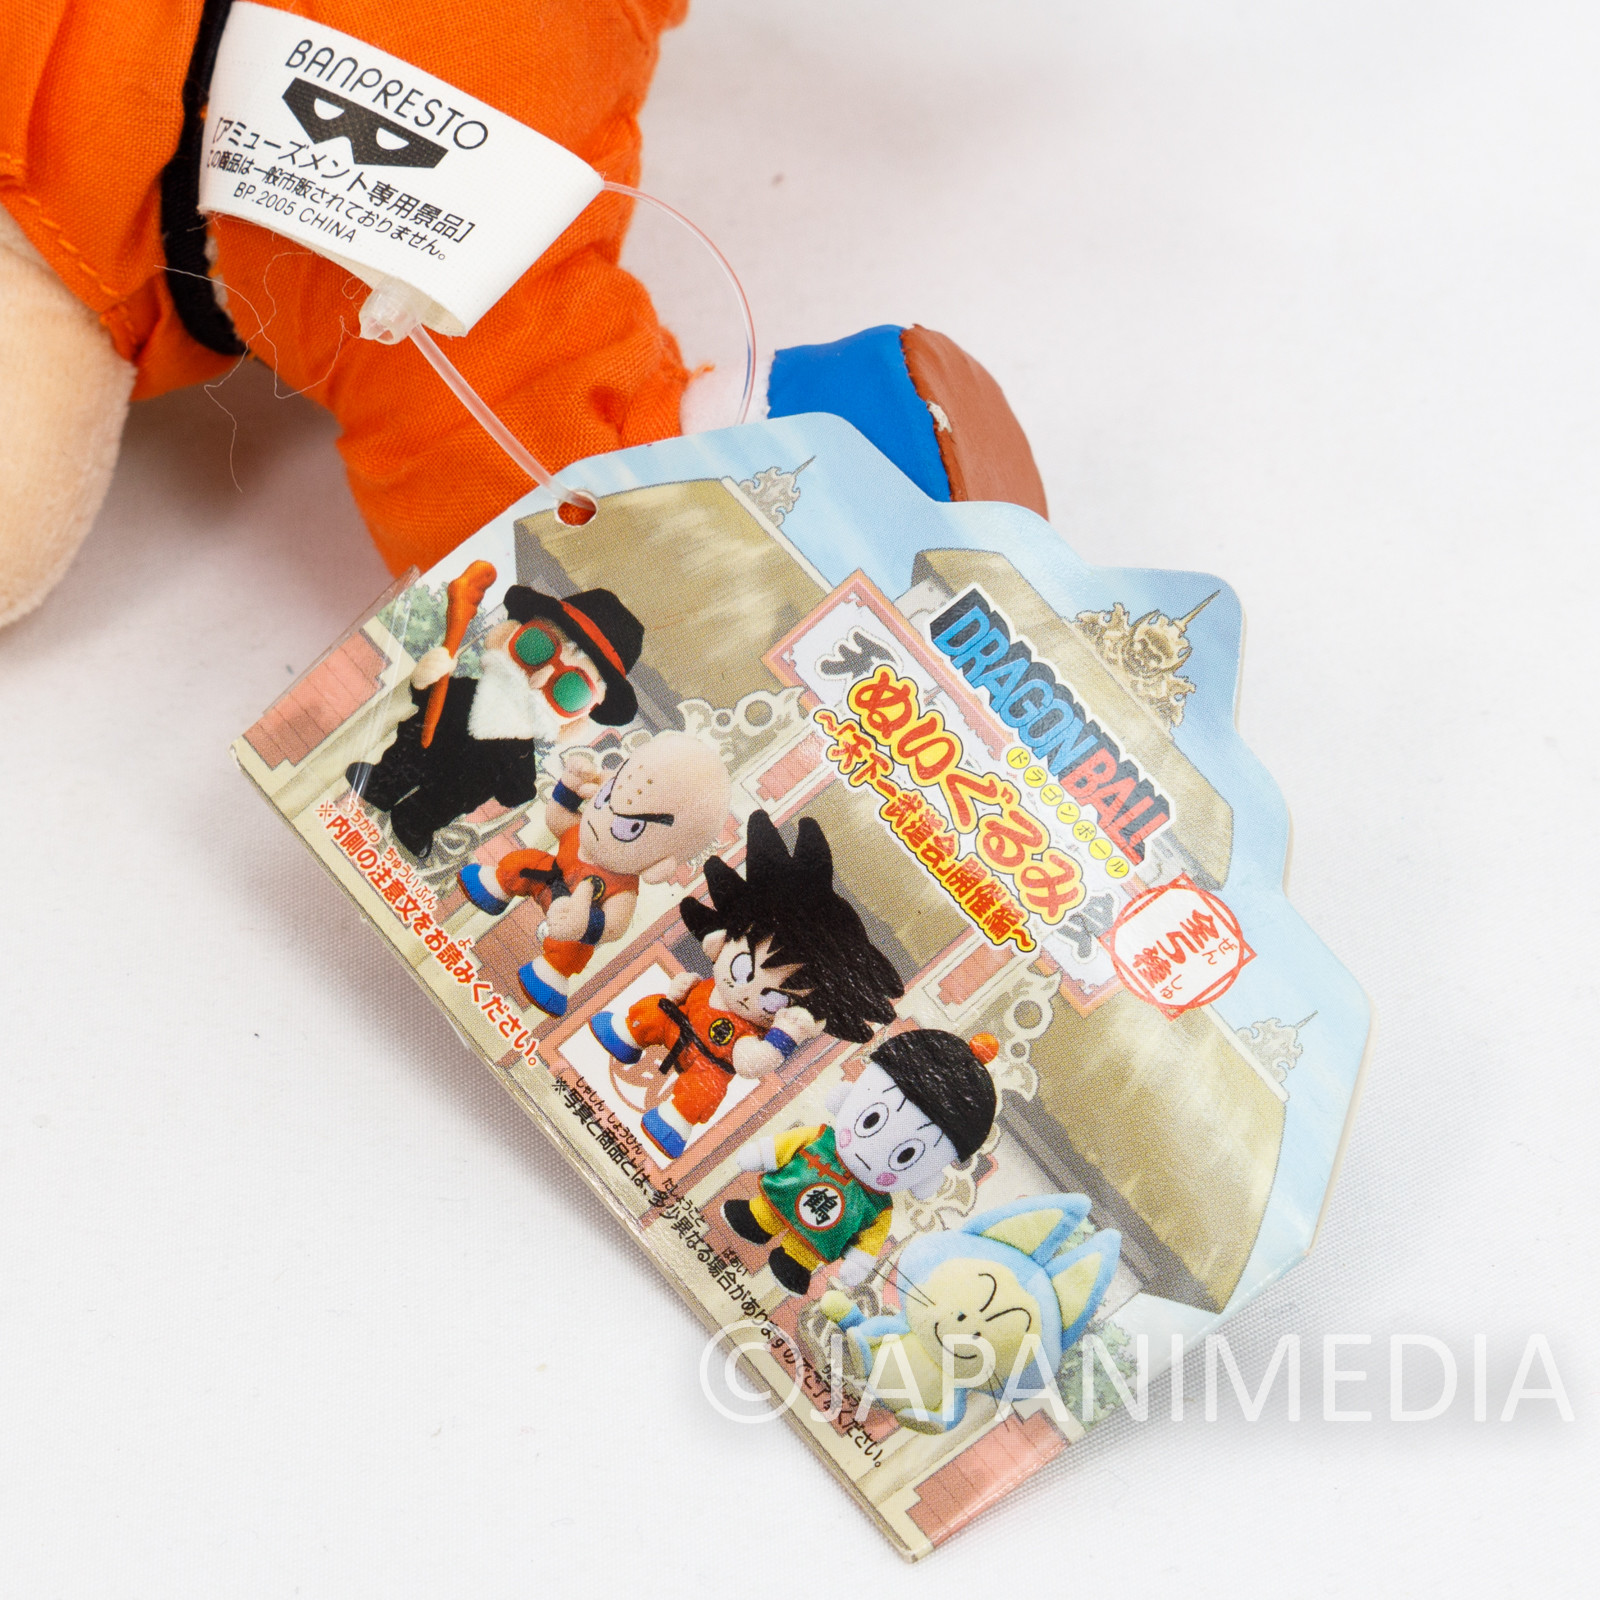 Dragon Ball Son Gokou Boy Plush Doll Figure Banpresto JAPAN ANIME MANGA 2